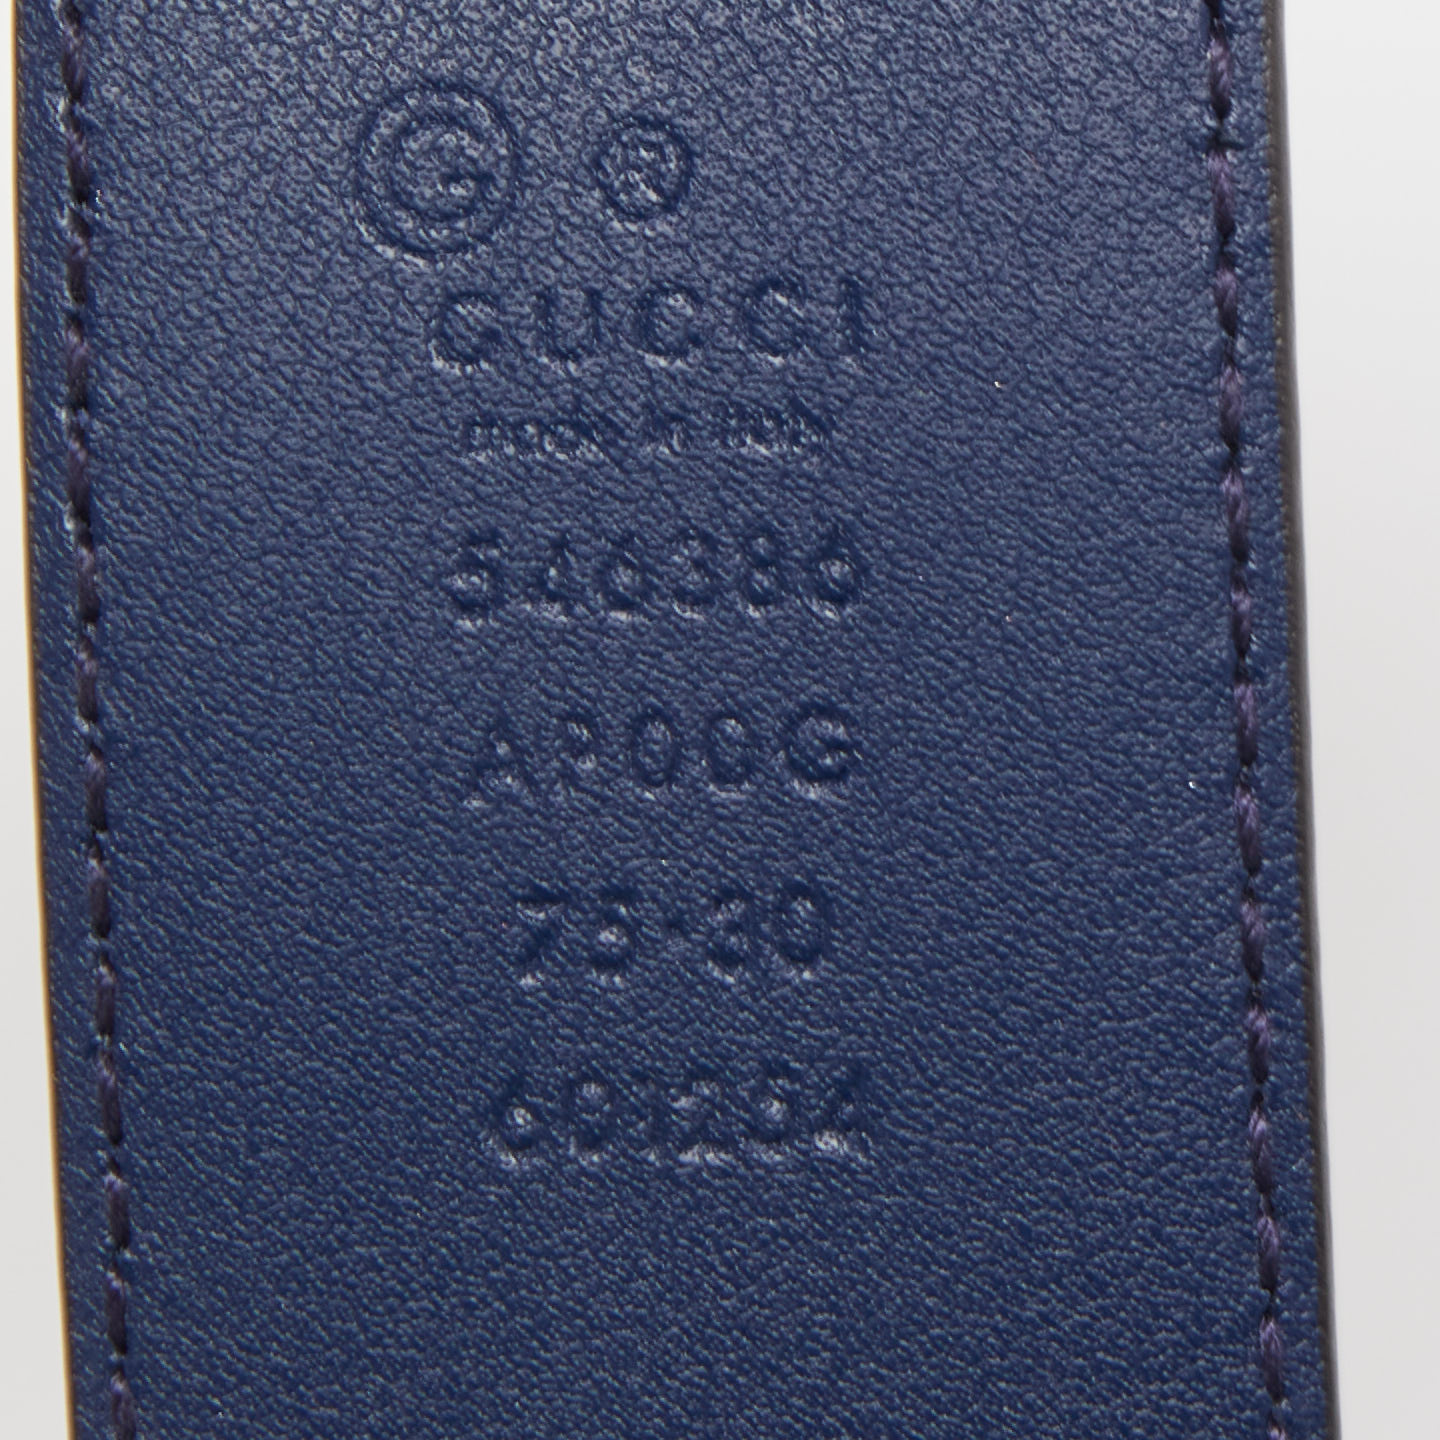 Gucci Navy Blue Leather Interlocking G Buckle Belt 75CM